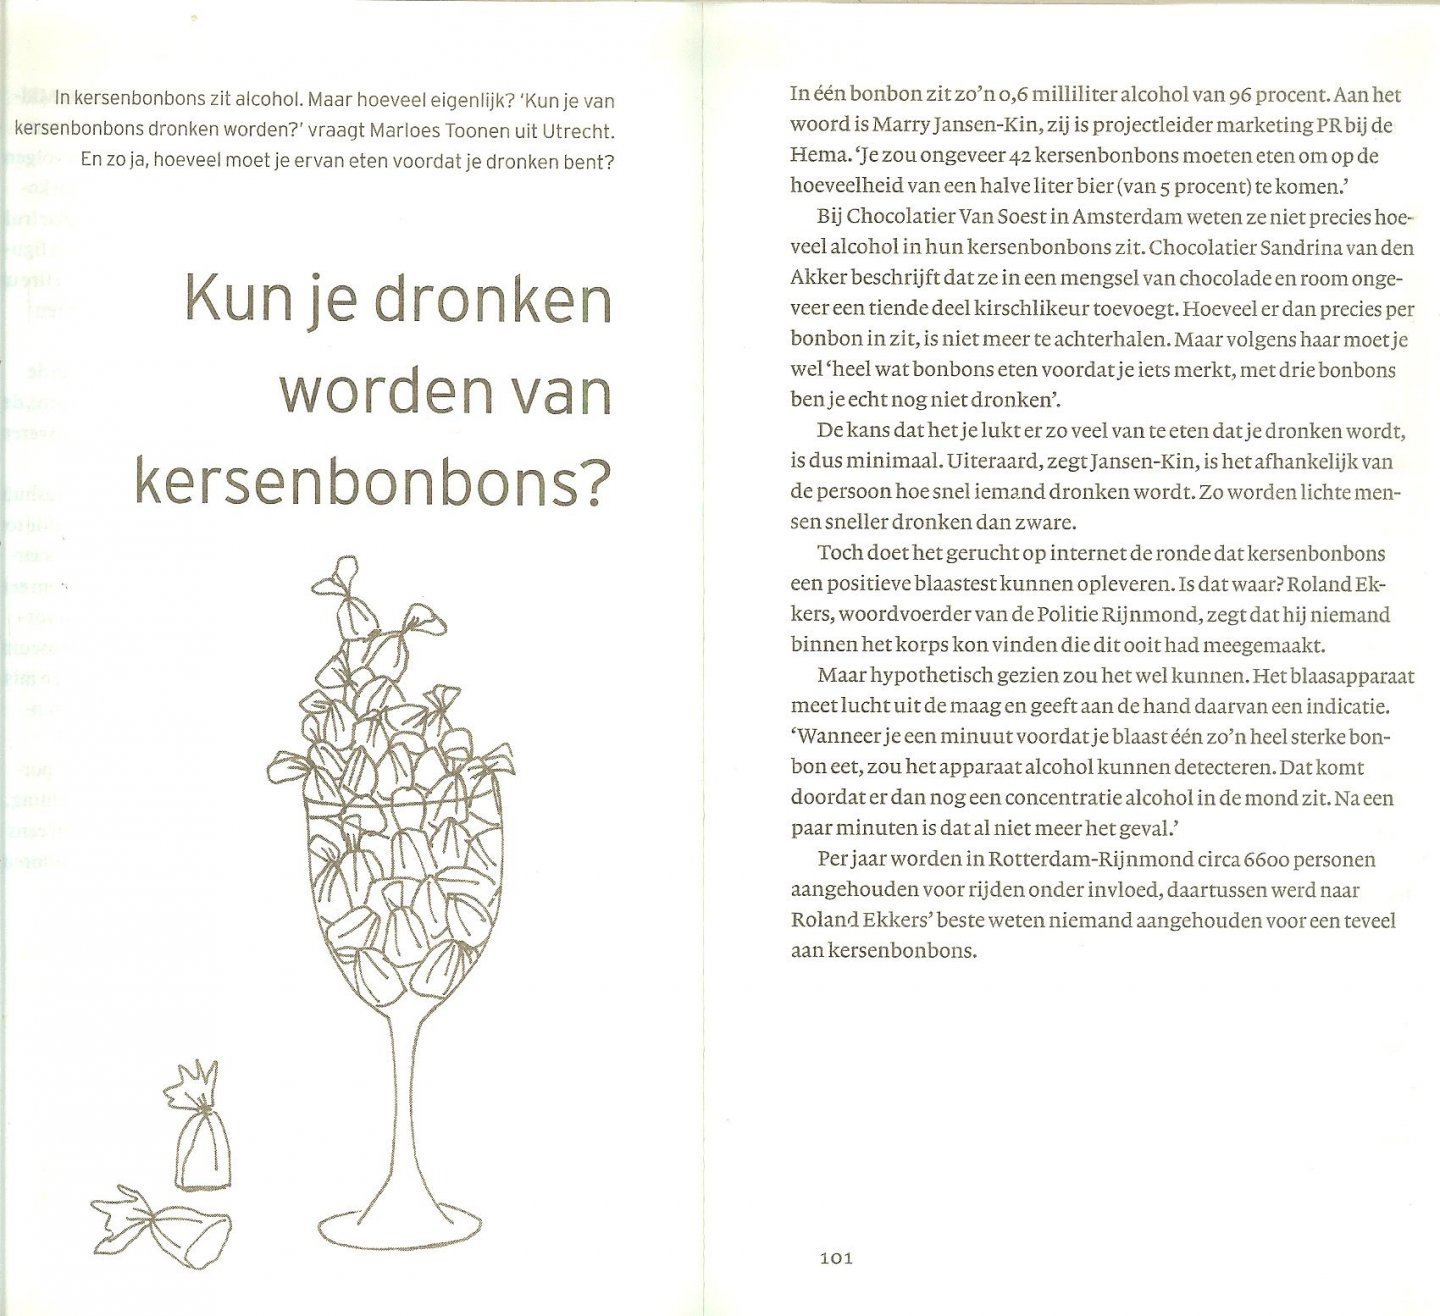 Vasterman, Juliette .. Omslagontwerp Ingrid van Halteren  en illustraties van Viola Lindner - Waarom zeggen we eh ?  100 alledaagse mysteries